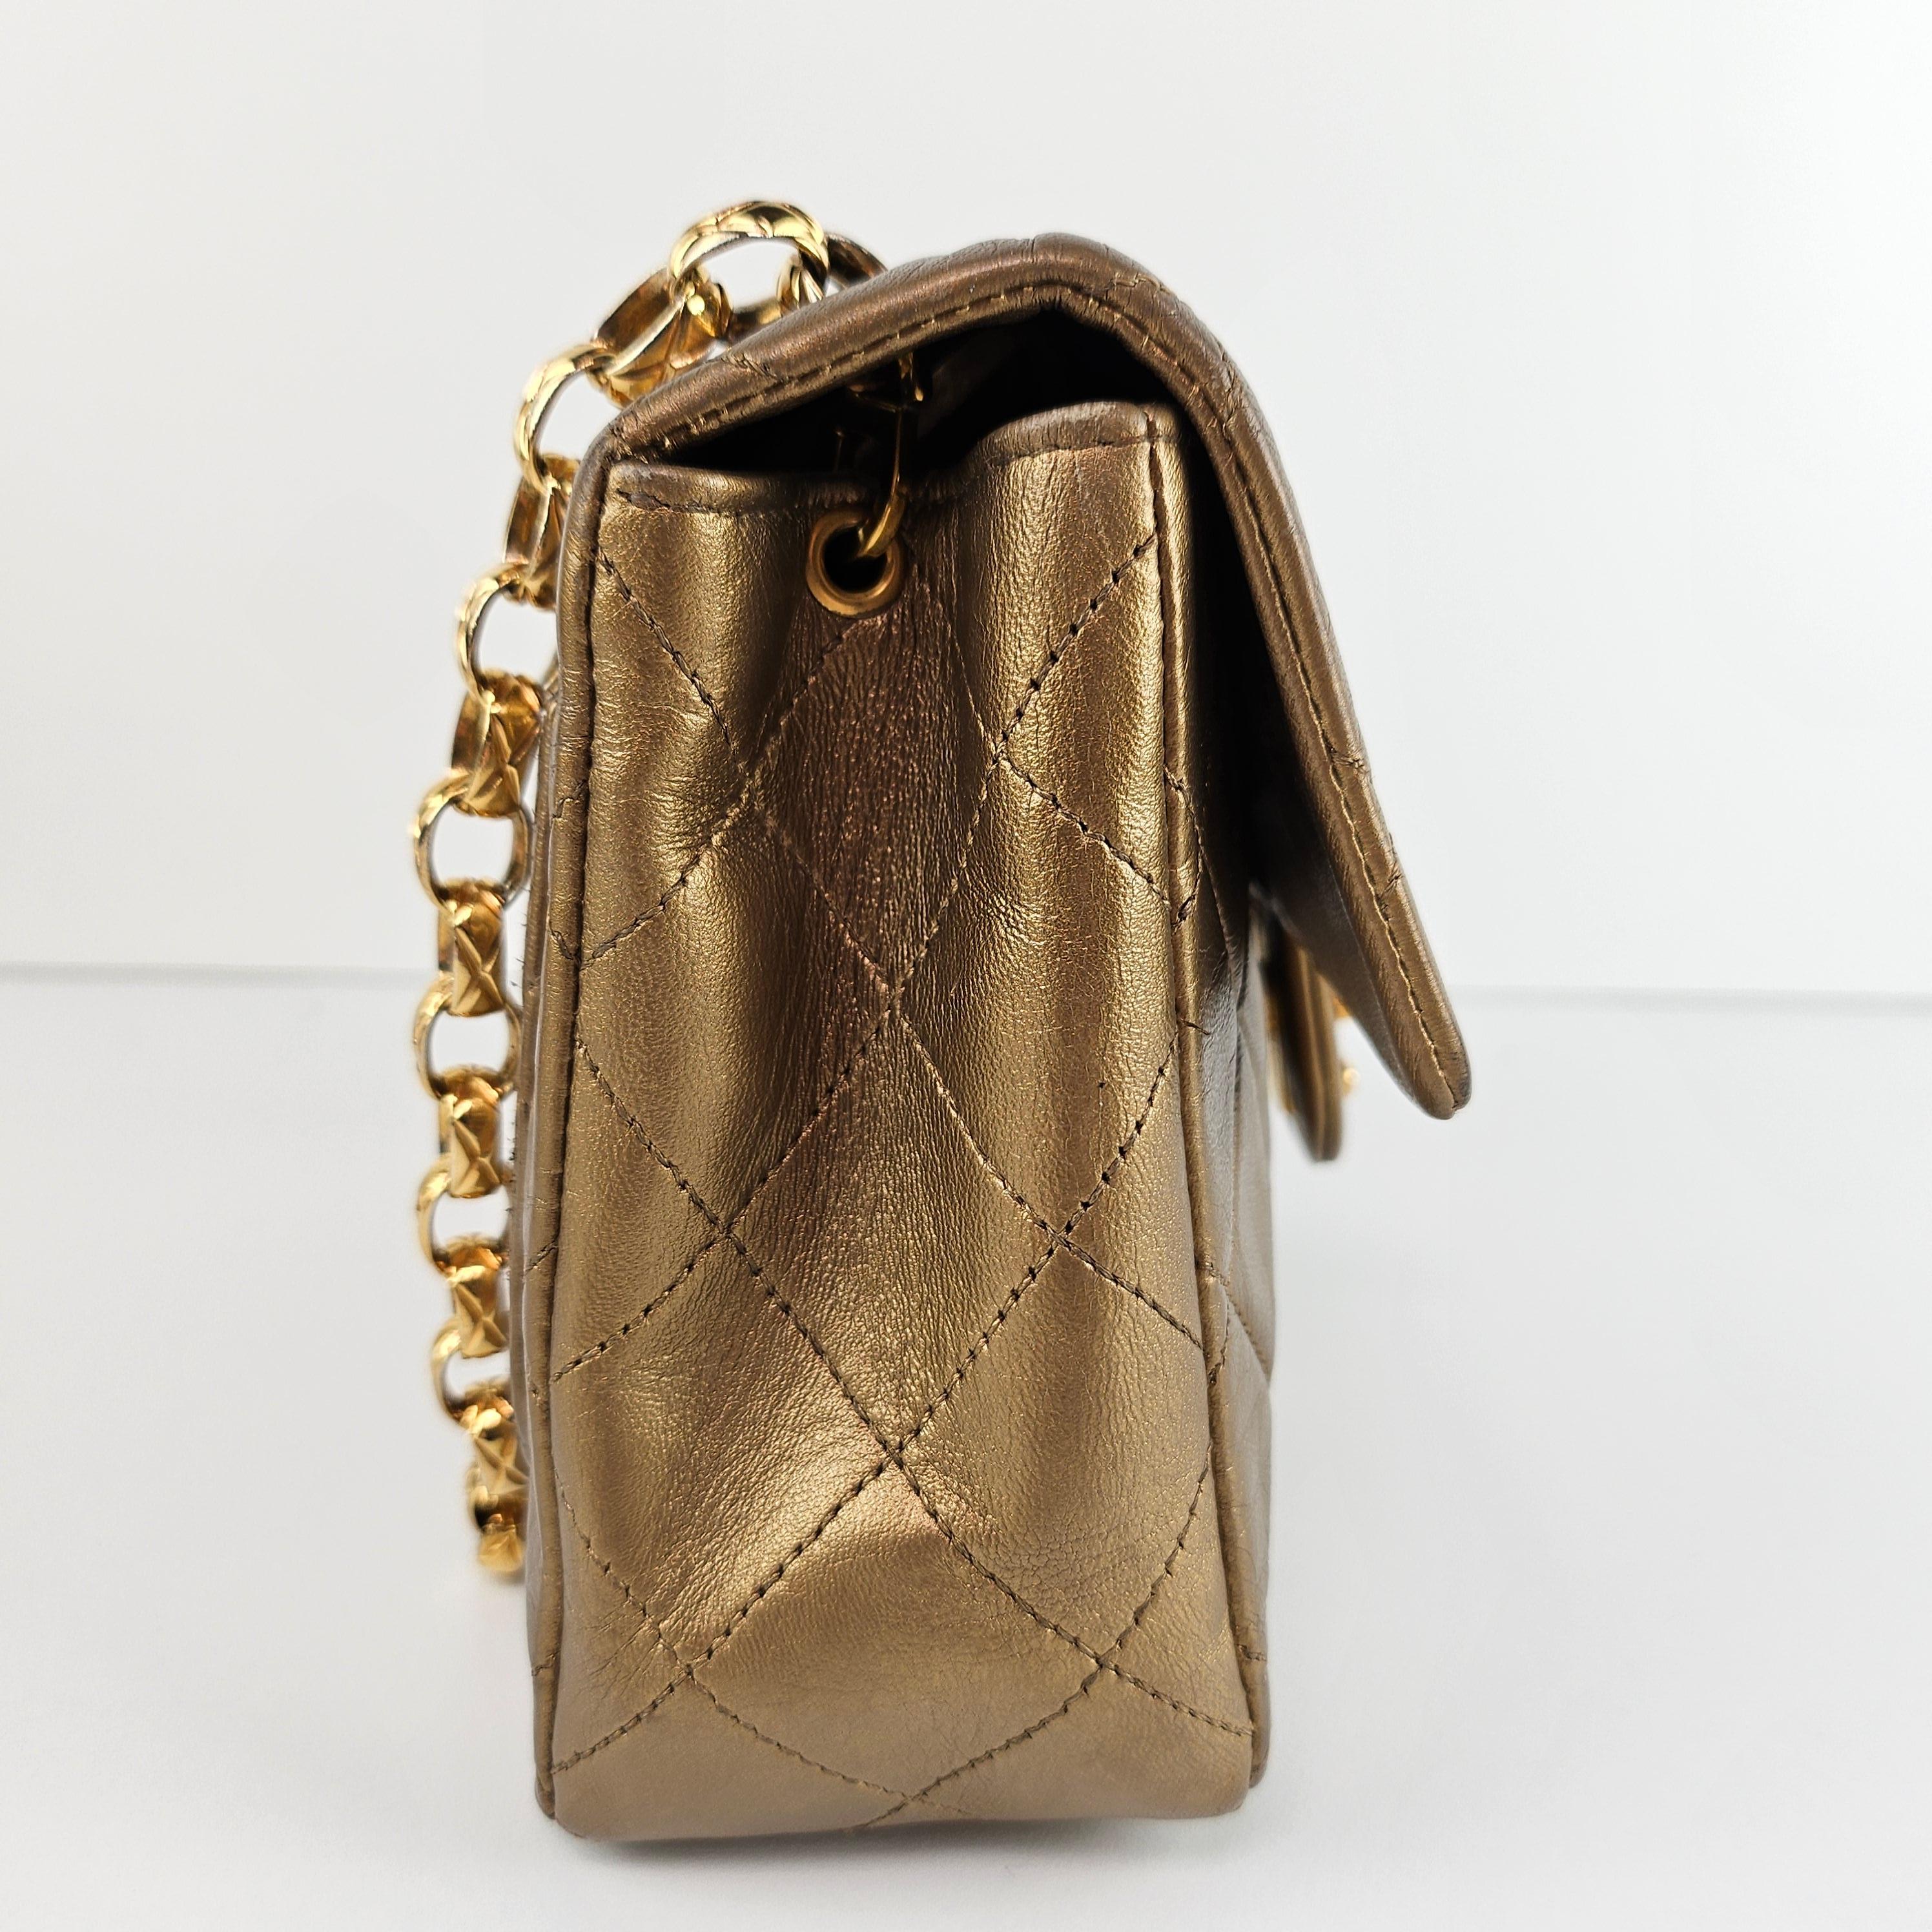 Chanel - Mini sac à rabat Bijoux en cuir doré métallisé matelassé 2